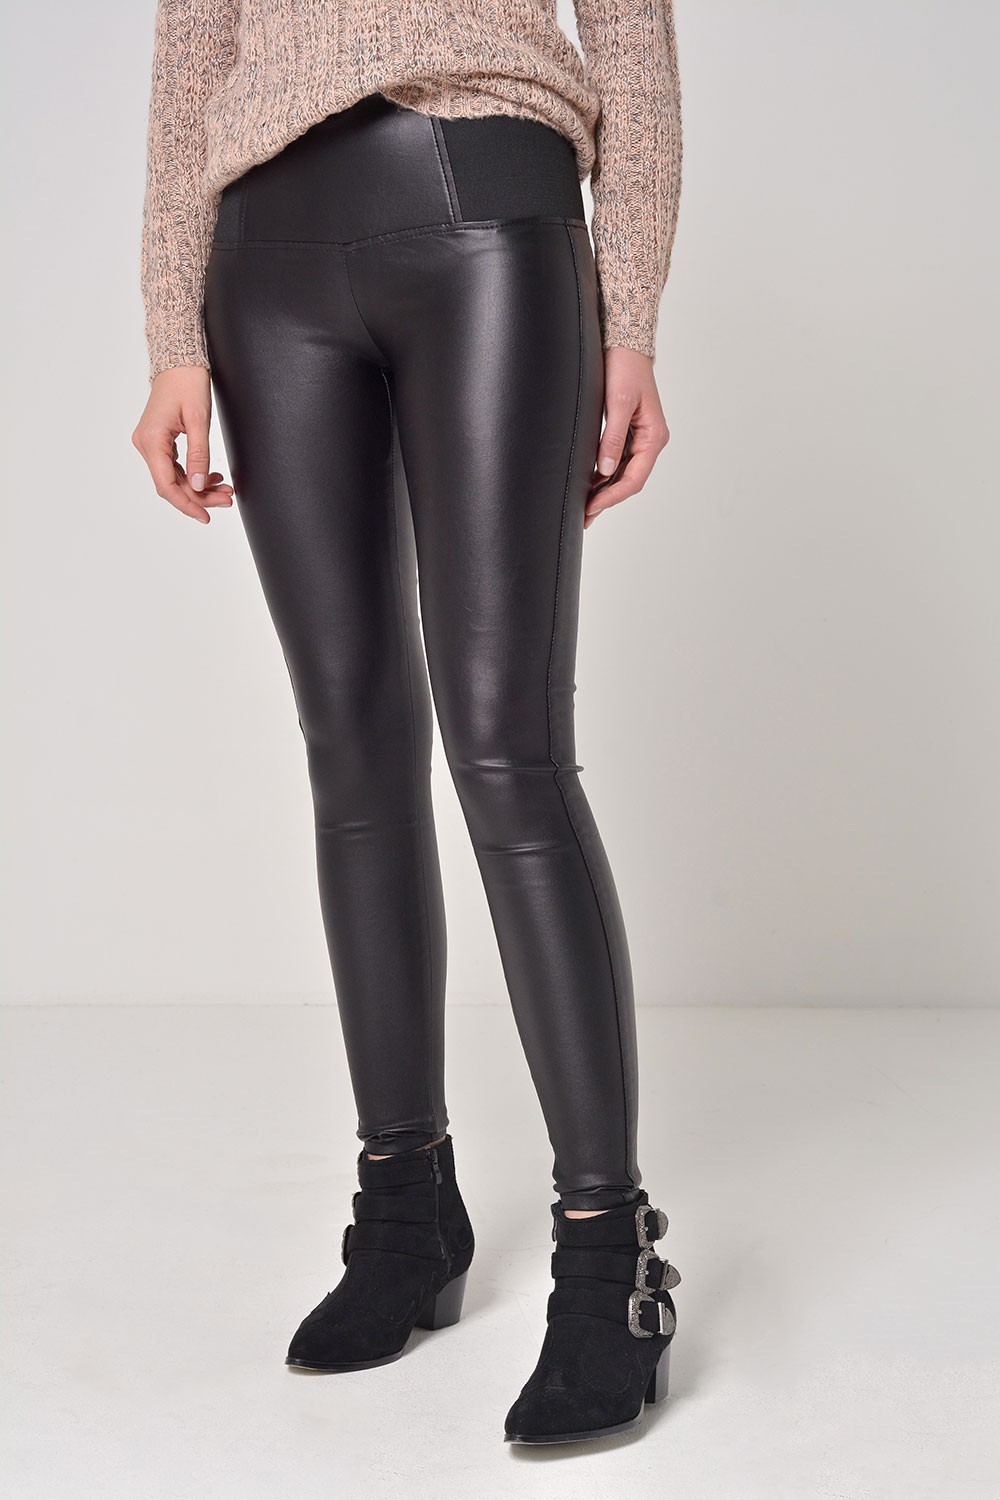 Denim Club Celine Elastic Waist Coated Trousers in Black | iCLOTHING